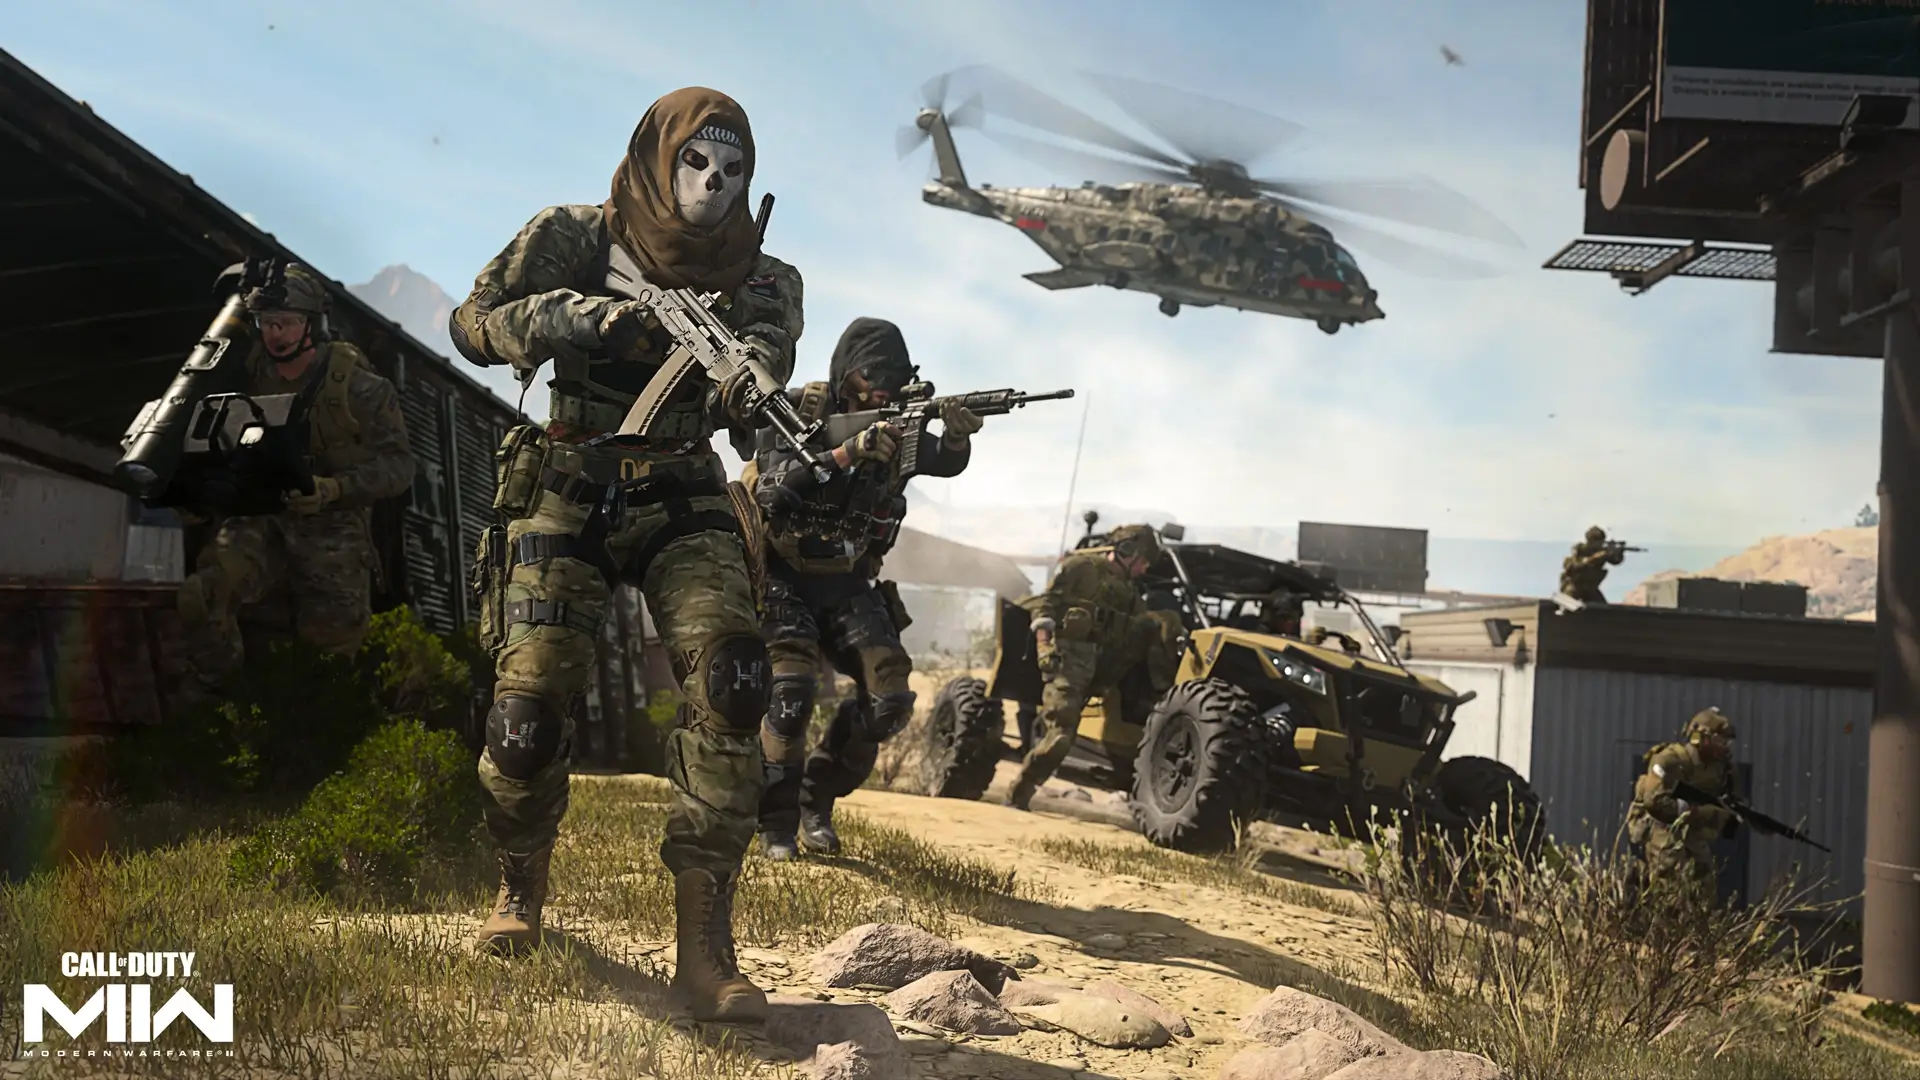 خرید Cp Call Of Duty Warzone 2